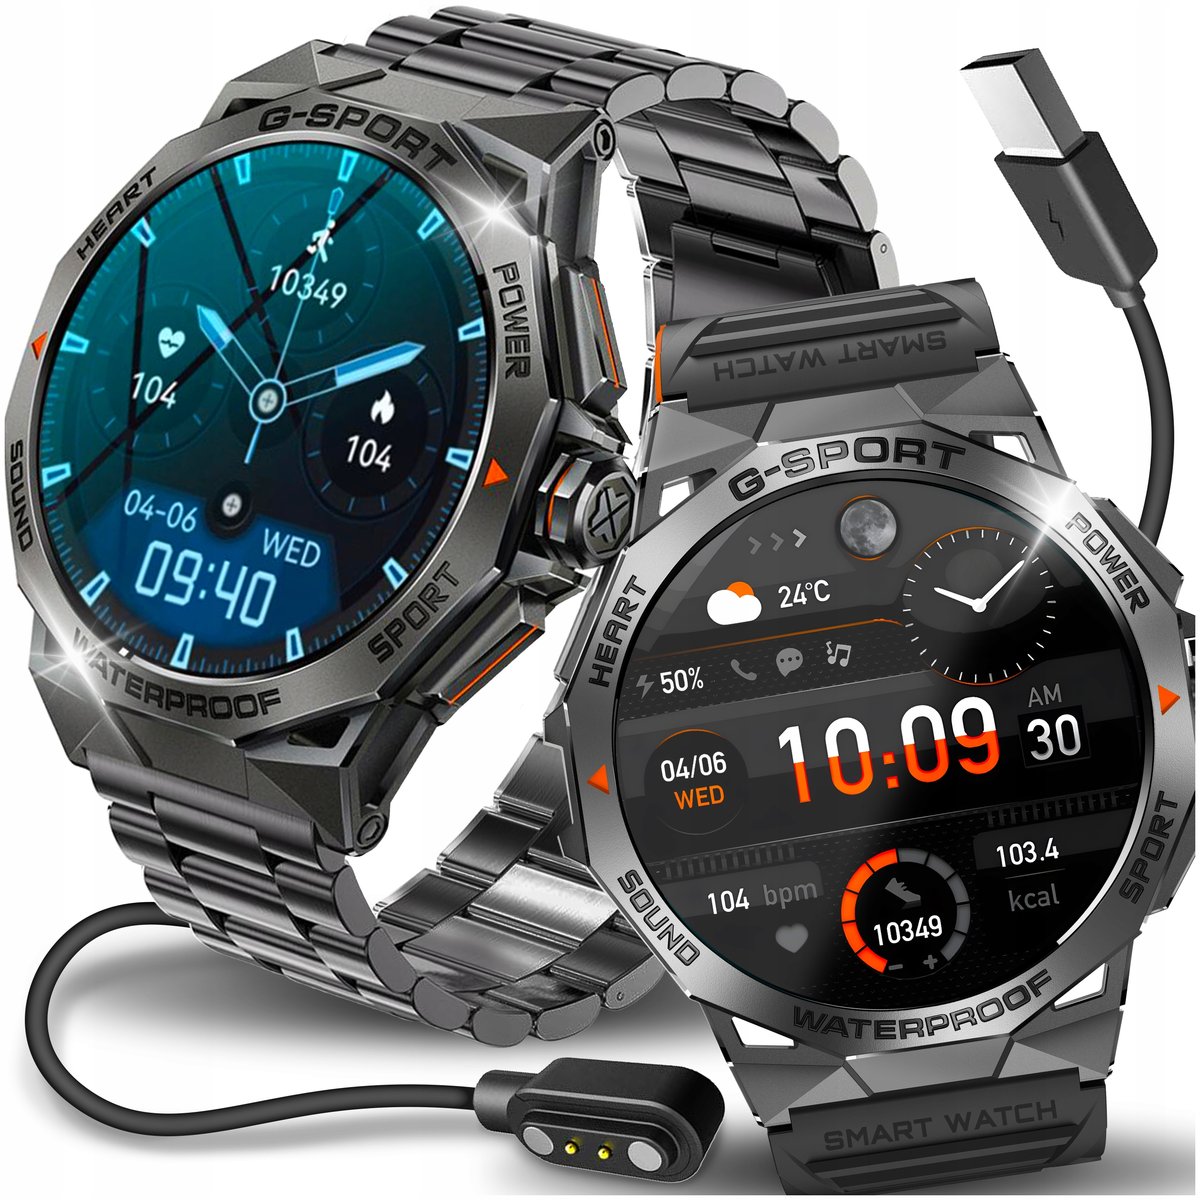 Zdjęcia - Smartwatche Smart Watch Smartwatch Zegarek Męski Menu Pl Sport Puls Rozmowy  Wodoodporn 